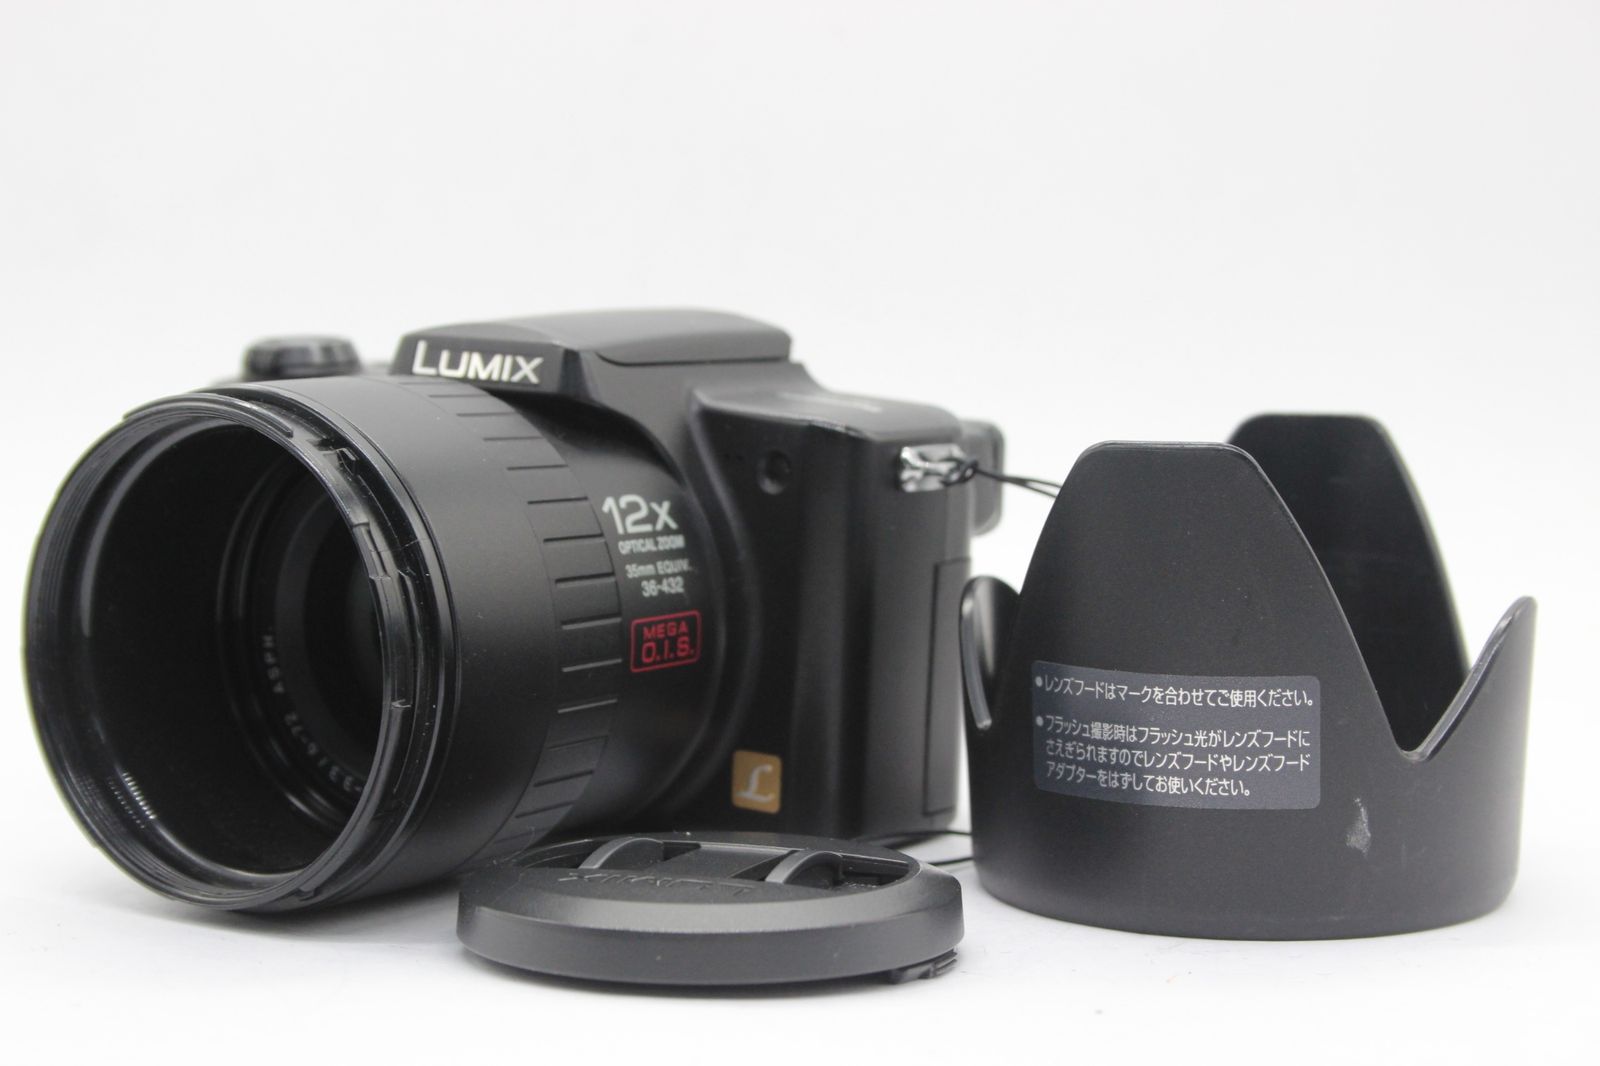 返品保証】 パナソニック Panasonic LUMIX DMC-FZ5 12x コンパクトデジタルカメラ s9132 - メルカリ